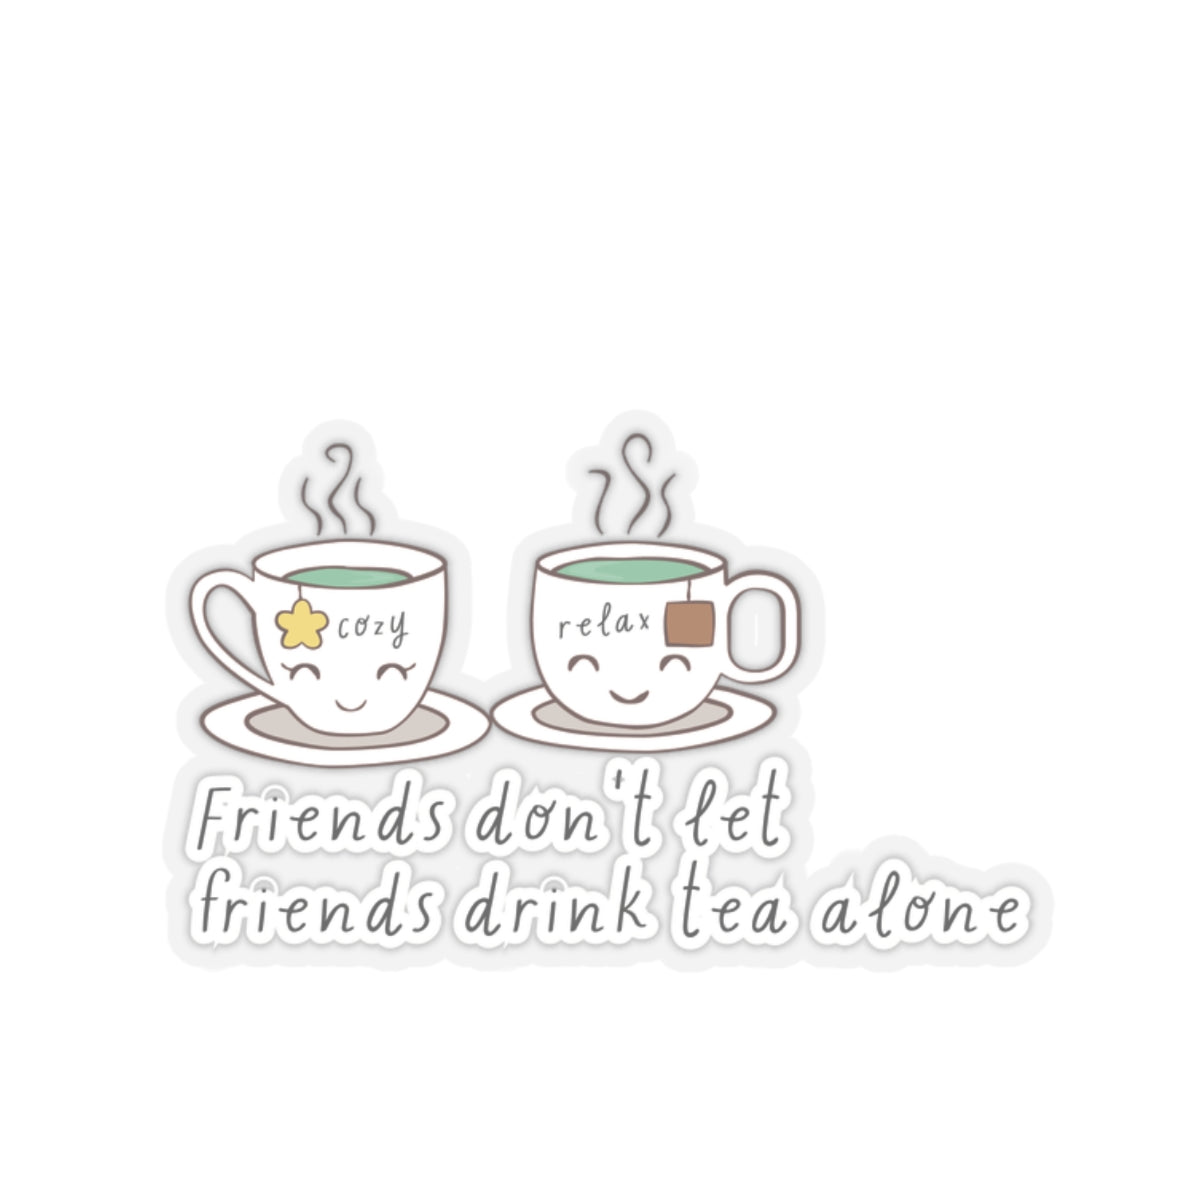 Friends Don't Let Friend Drink Tea Alone Kiss-Cut Stickers-Paper products-2" × 2"-Transparent-mysticalcherry